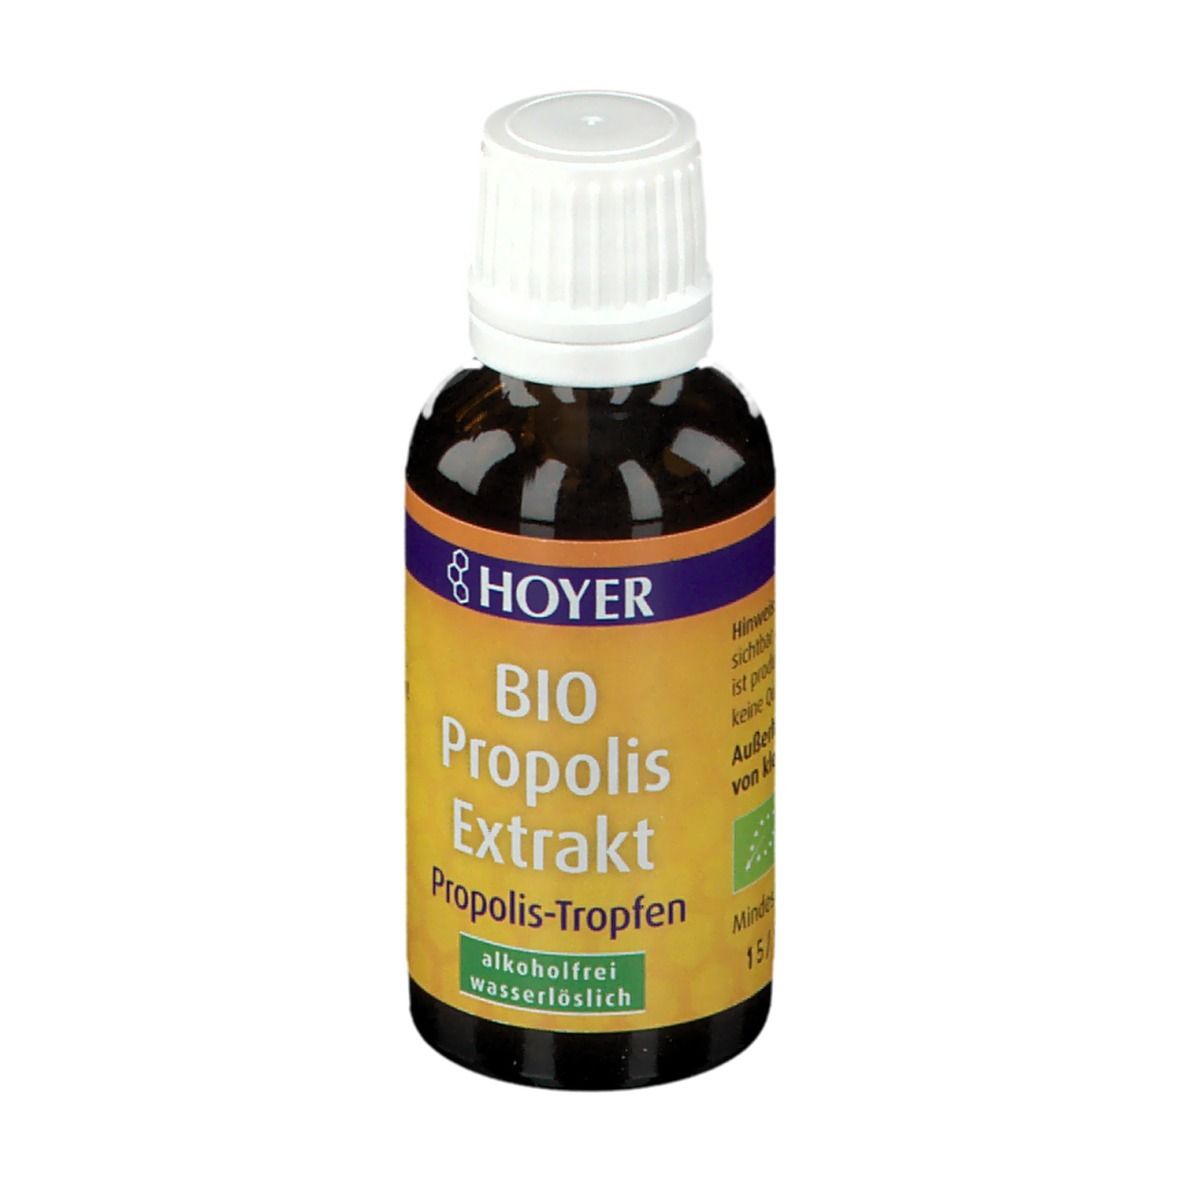 HOYER Propolis Extrakt Bio alkoholfrei wasserlöslich